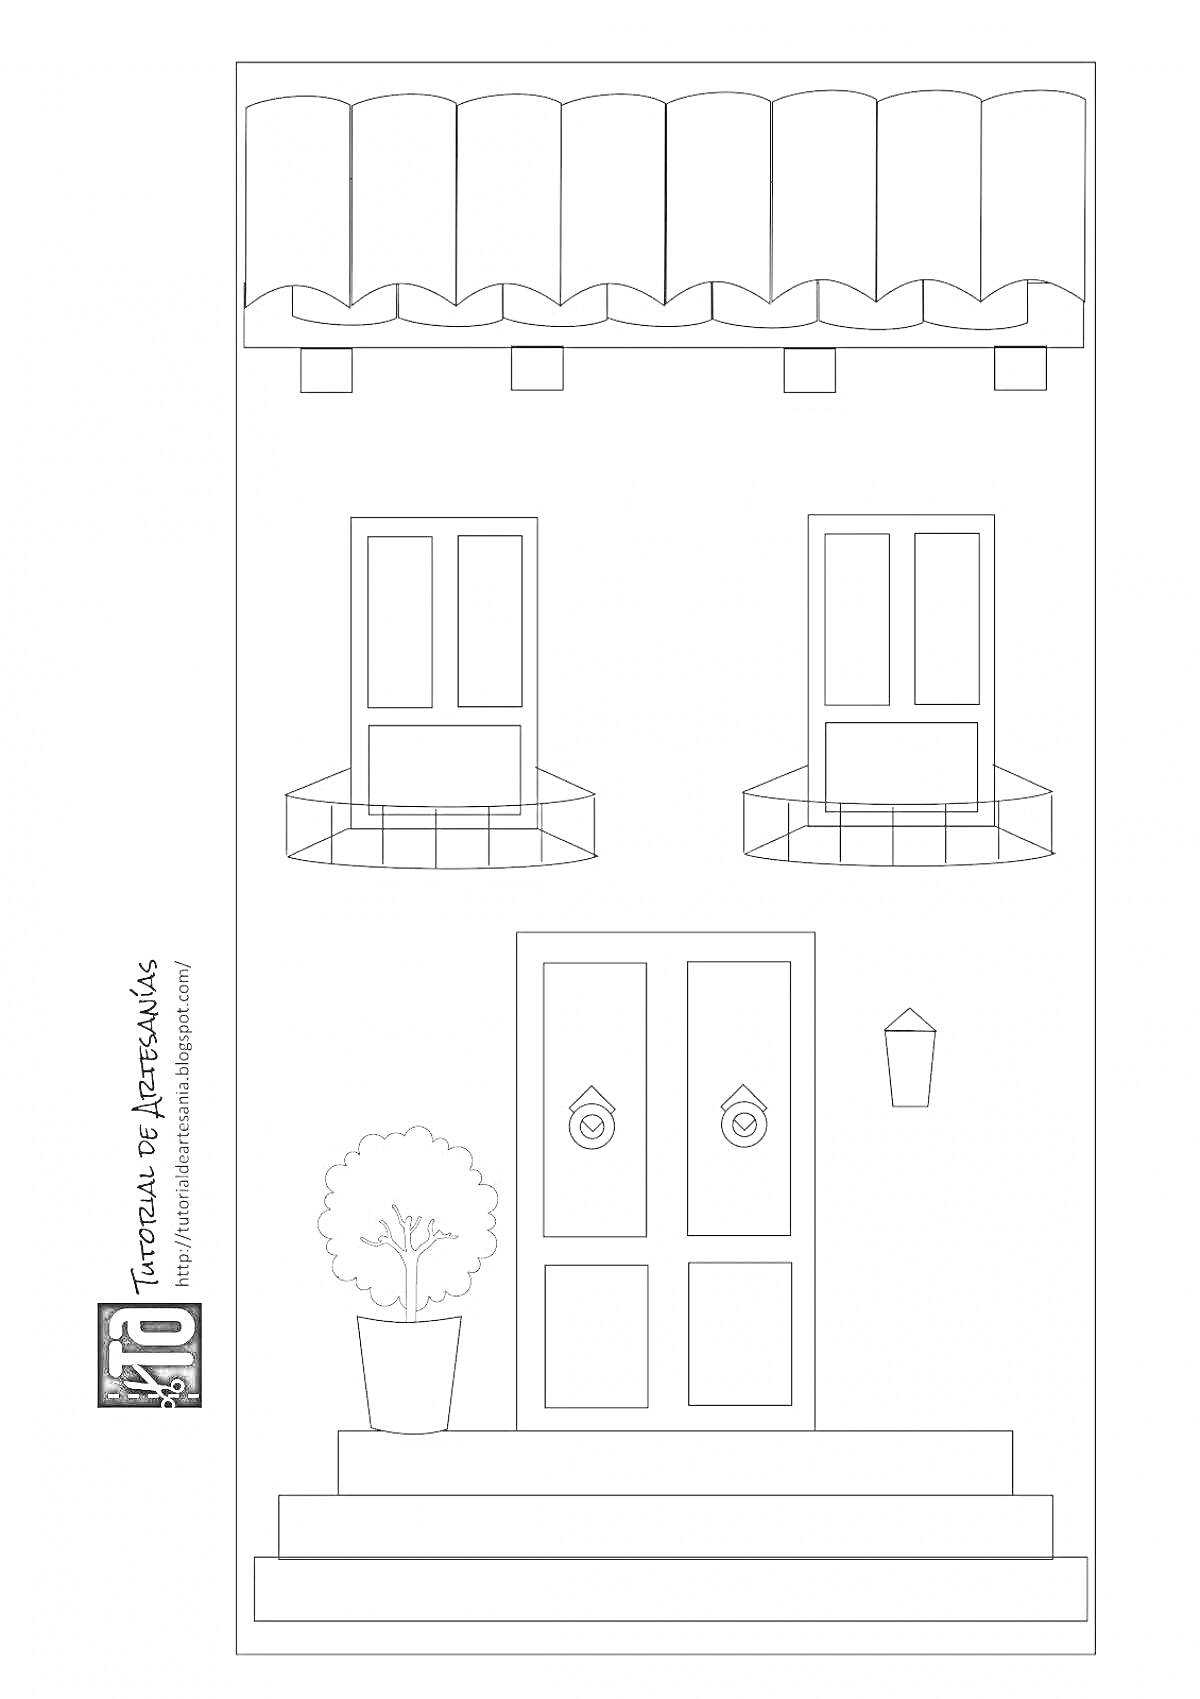 На раскраске изображено: Кукольный дом, Фасад, Дверь, Окна, Дерево в горшке, Навес, Лестница